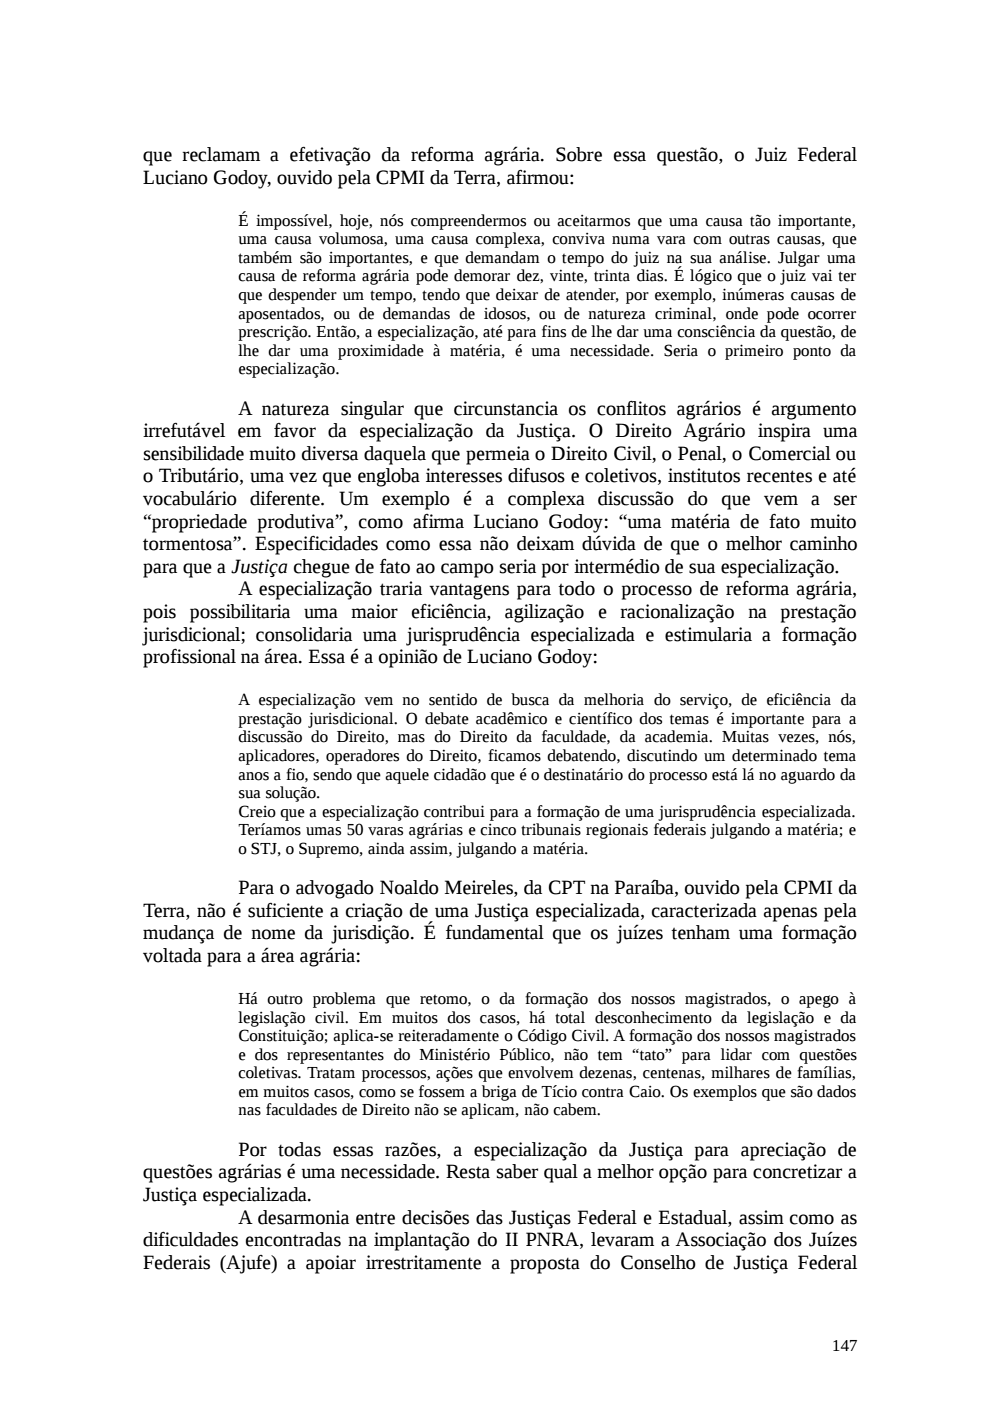 Page 147 from Relatório final da comissão